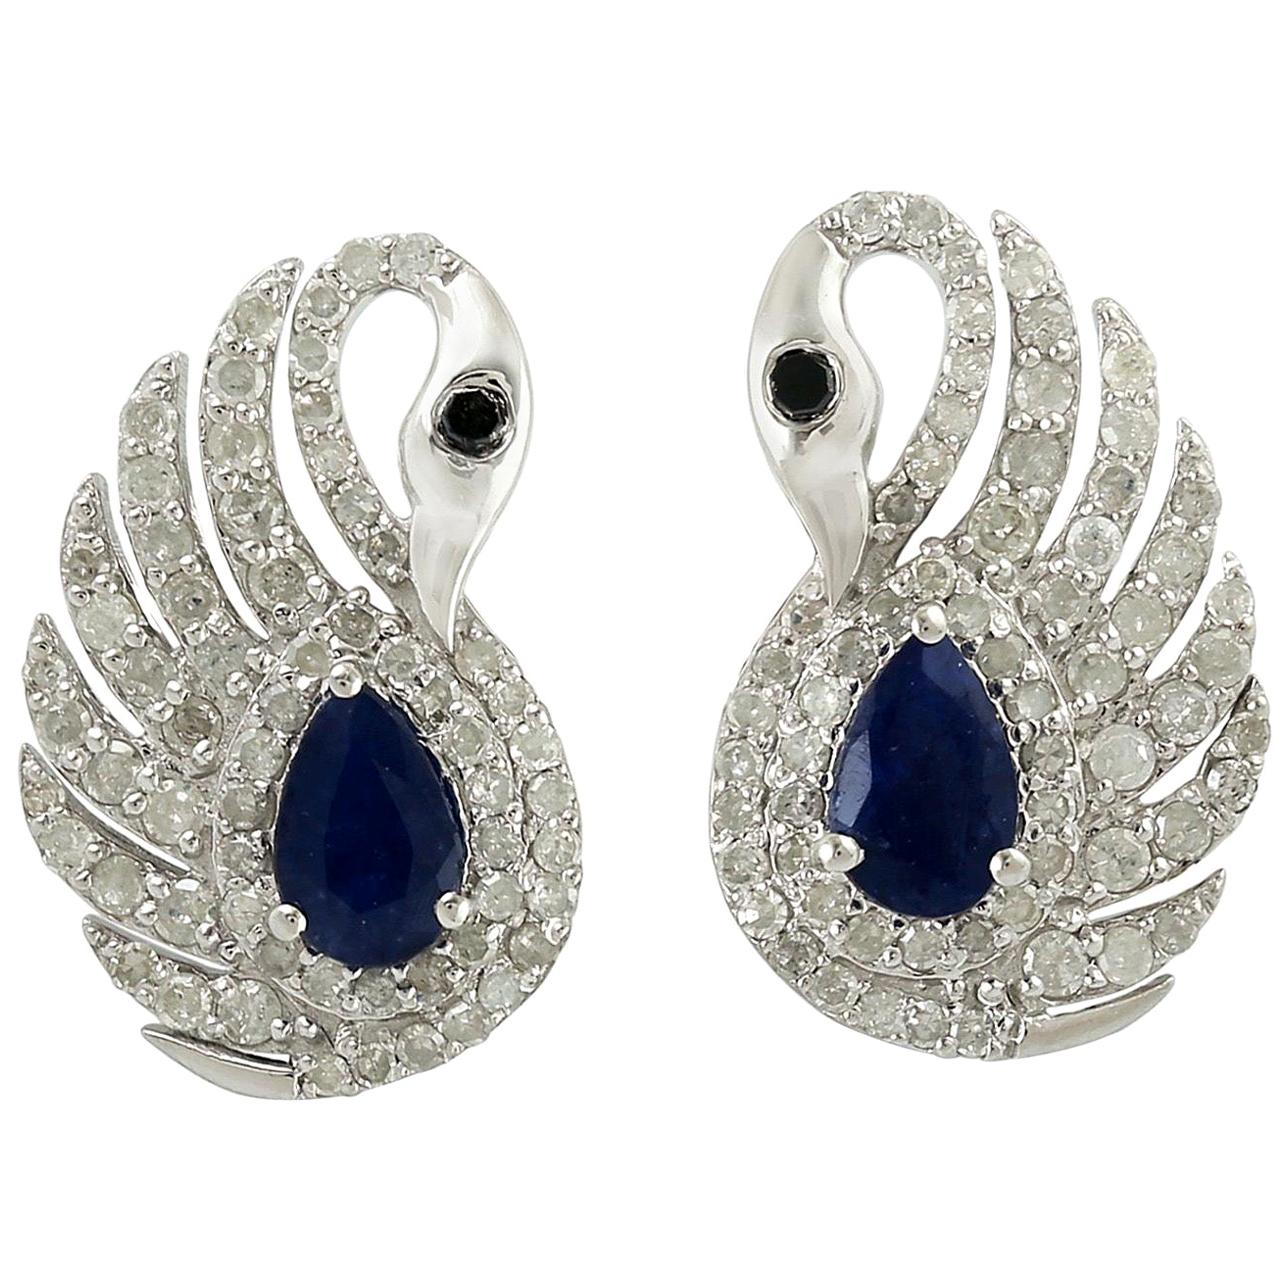 .95 Carat Blue Sapphire Diamond Swan Stud Earrings